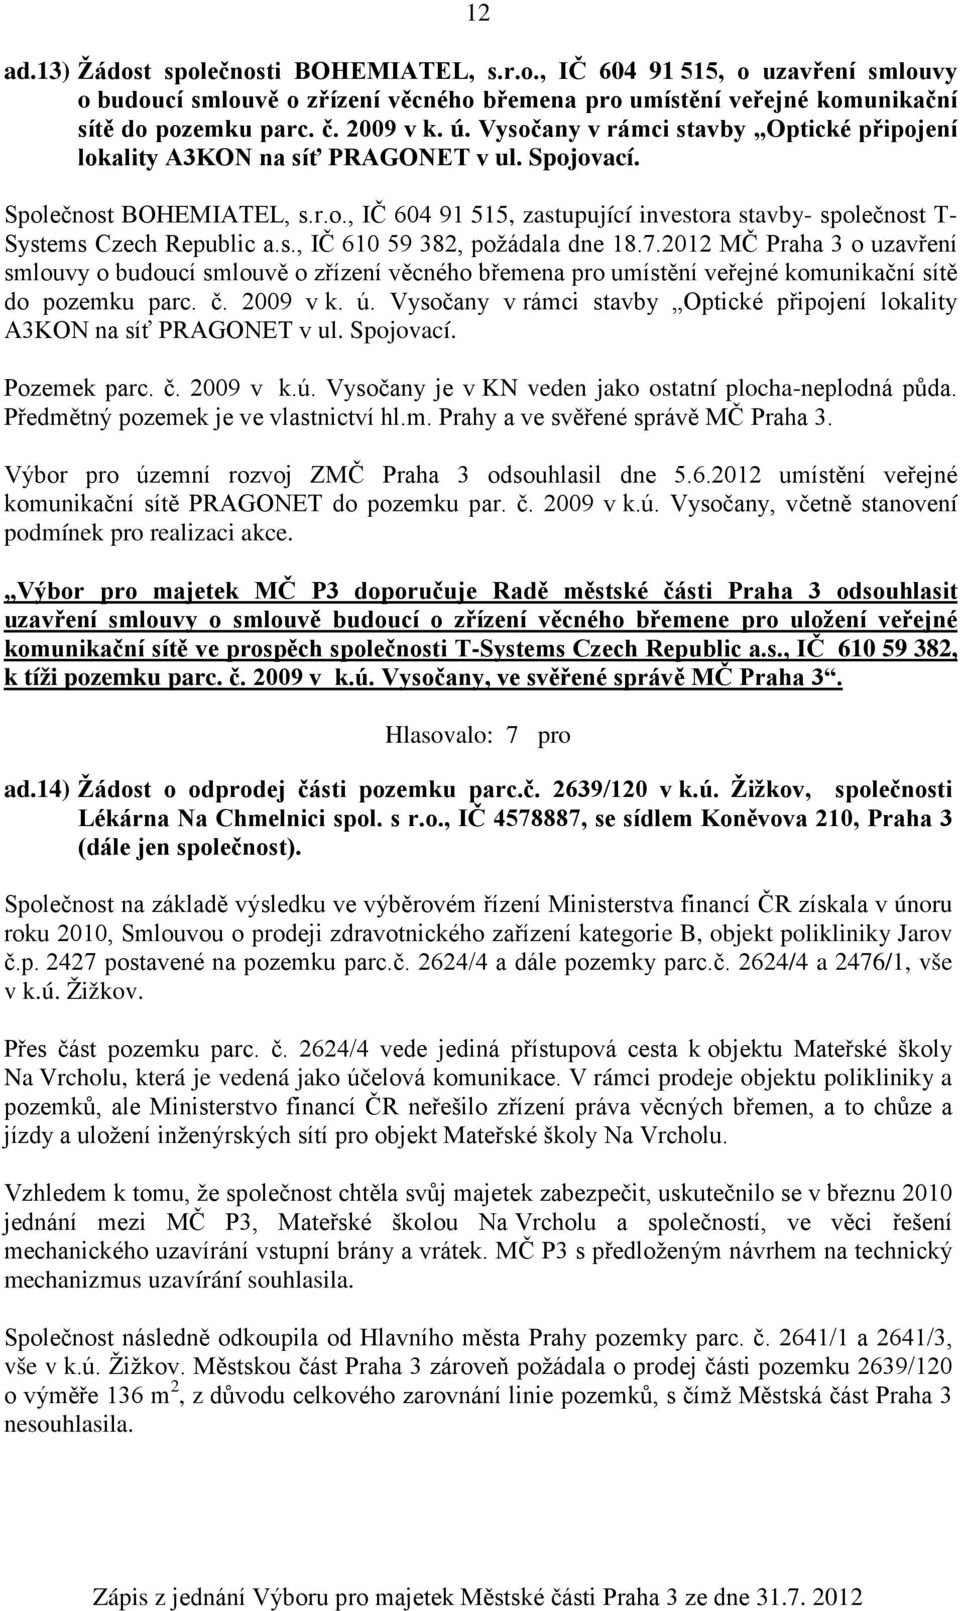 s., IČ 610 59 382, požádala dne 18.7.2012 MČ Praha 3 o uzavření smlouvy o budoucí smlouvě o zřízení věcného břemena pro umístění veřejné komunikační sítě do pozemku parc. č. 2009 v k. ú.